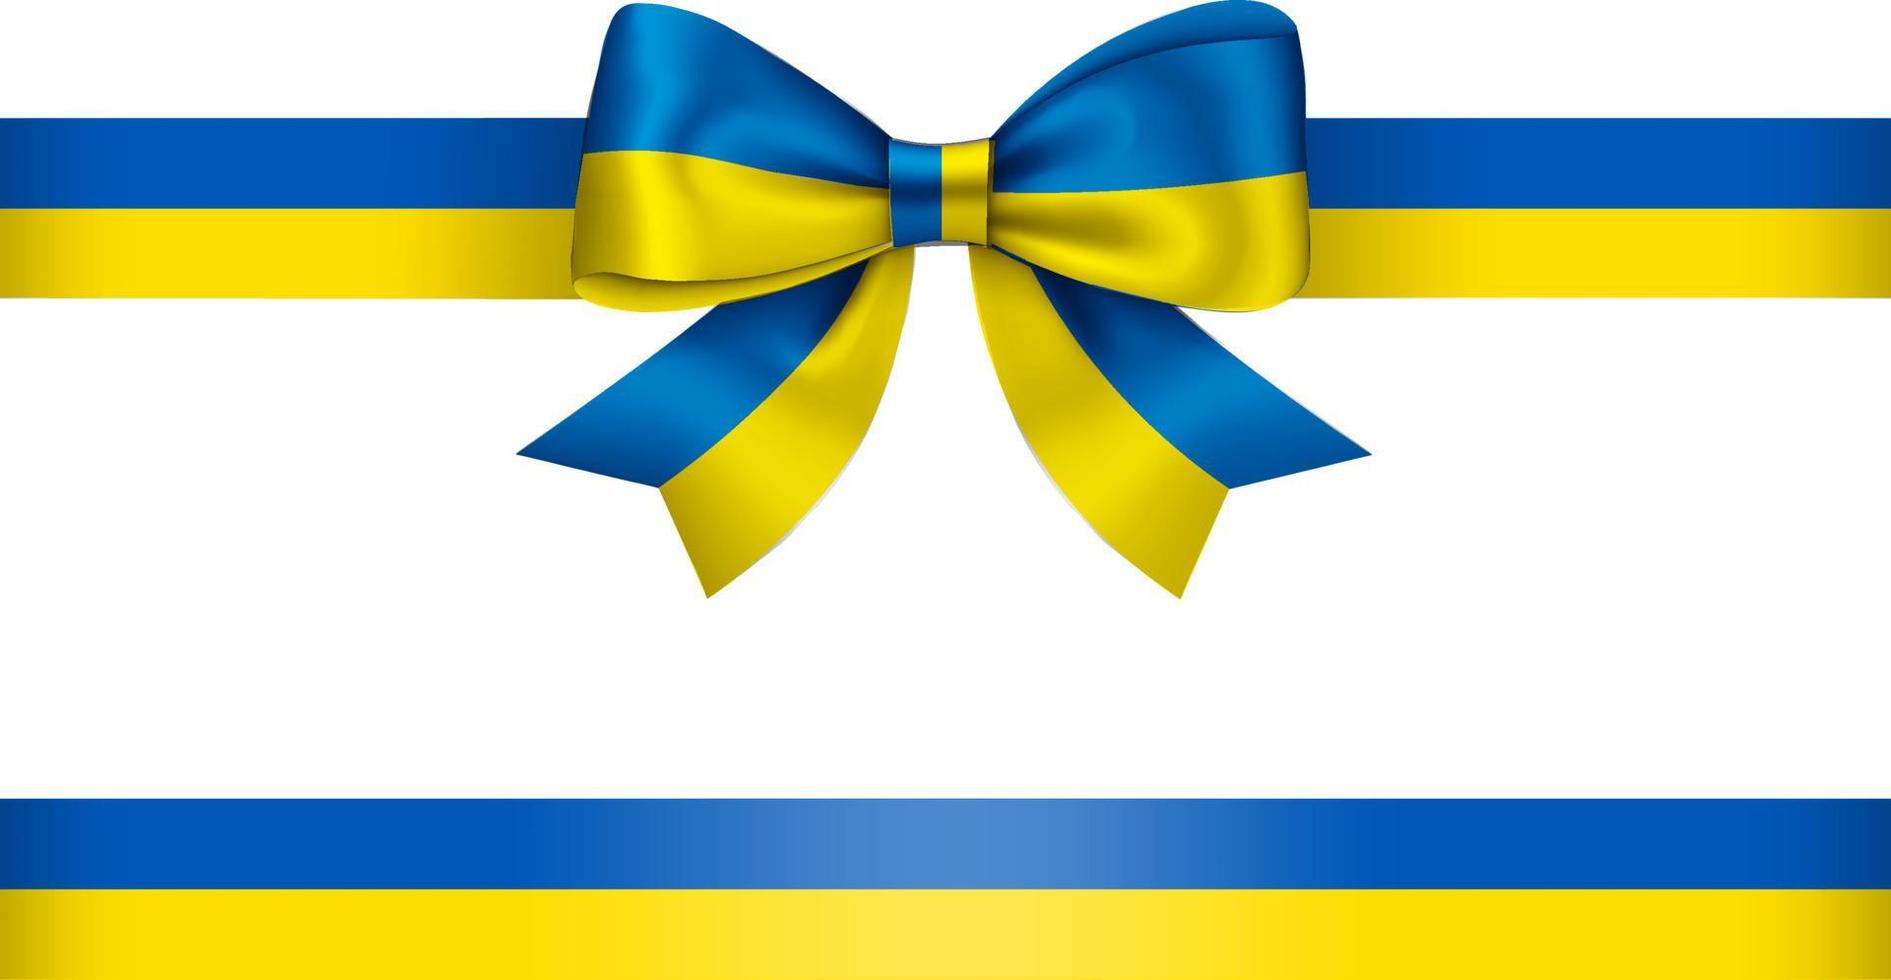 fiocco e nastro con i colori della bandiera dell'ucraina. fiocco blu e giallo con nastro vettore